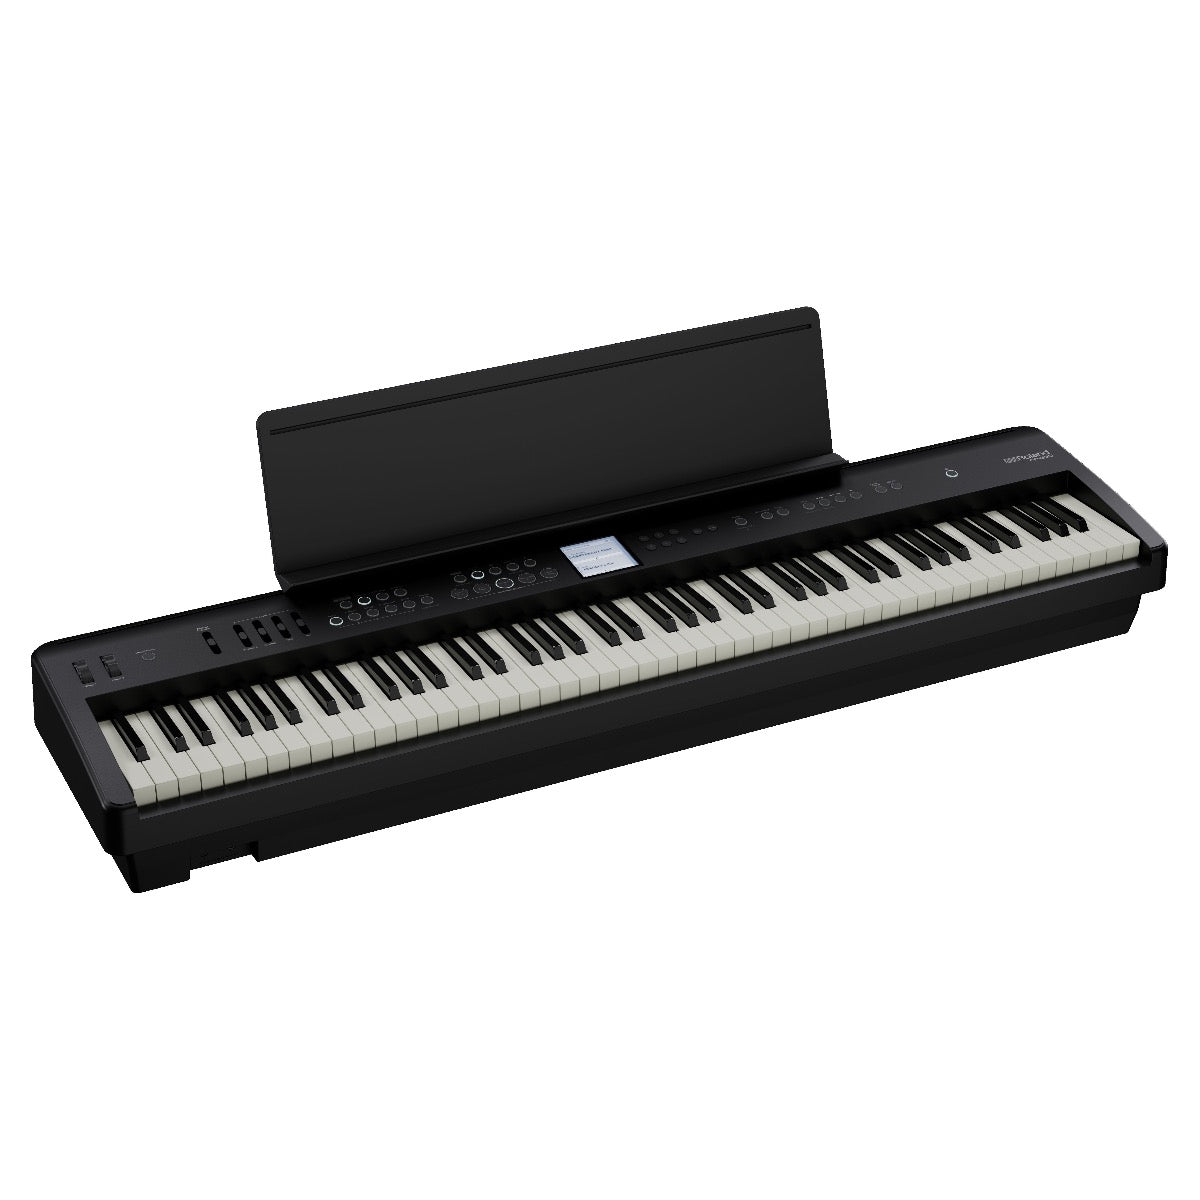 Roland FP-E50 Digital Piano KEY ESSENTIALS BUNDLE